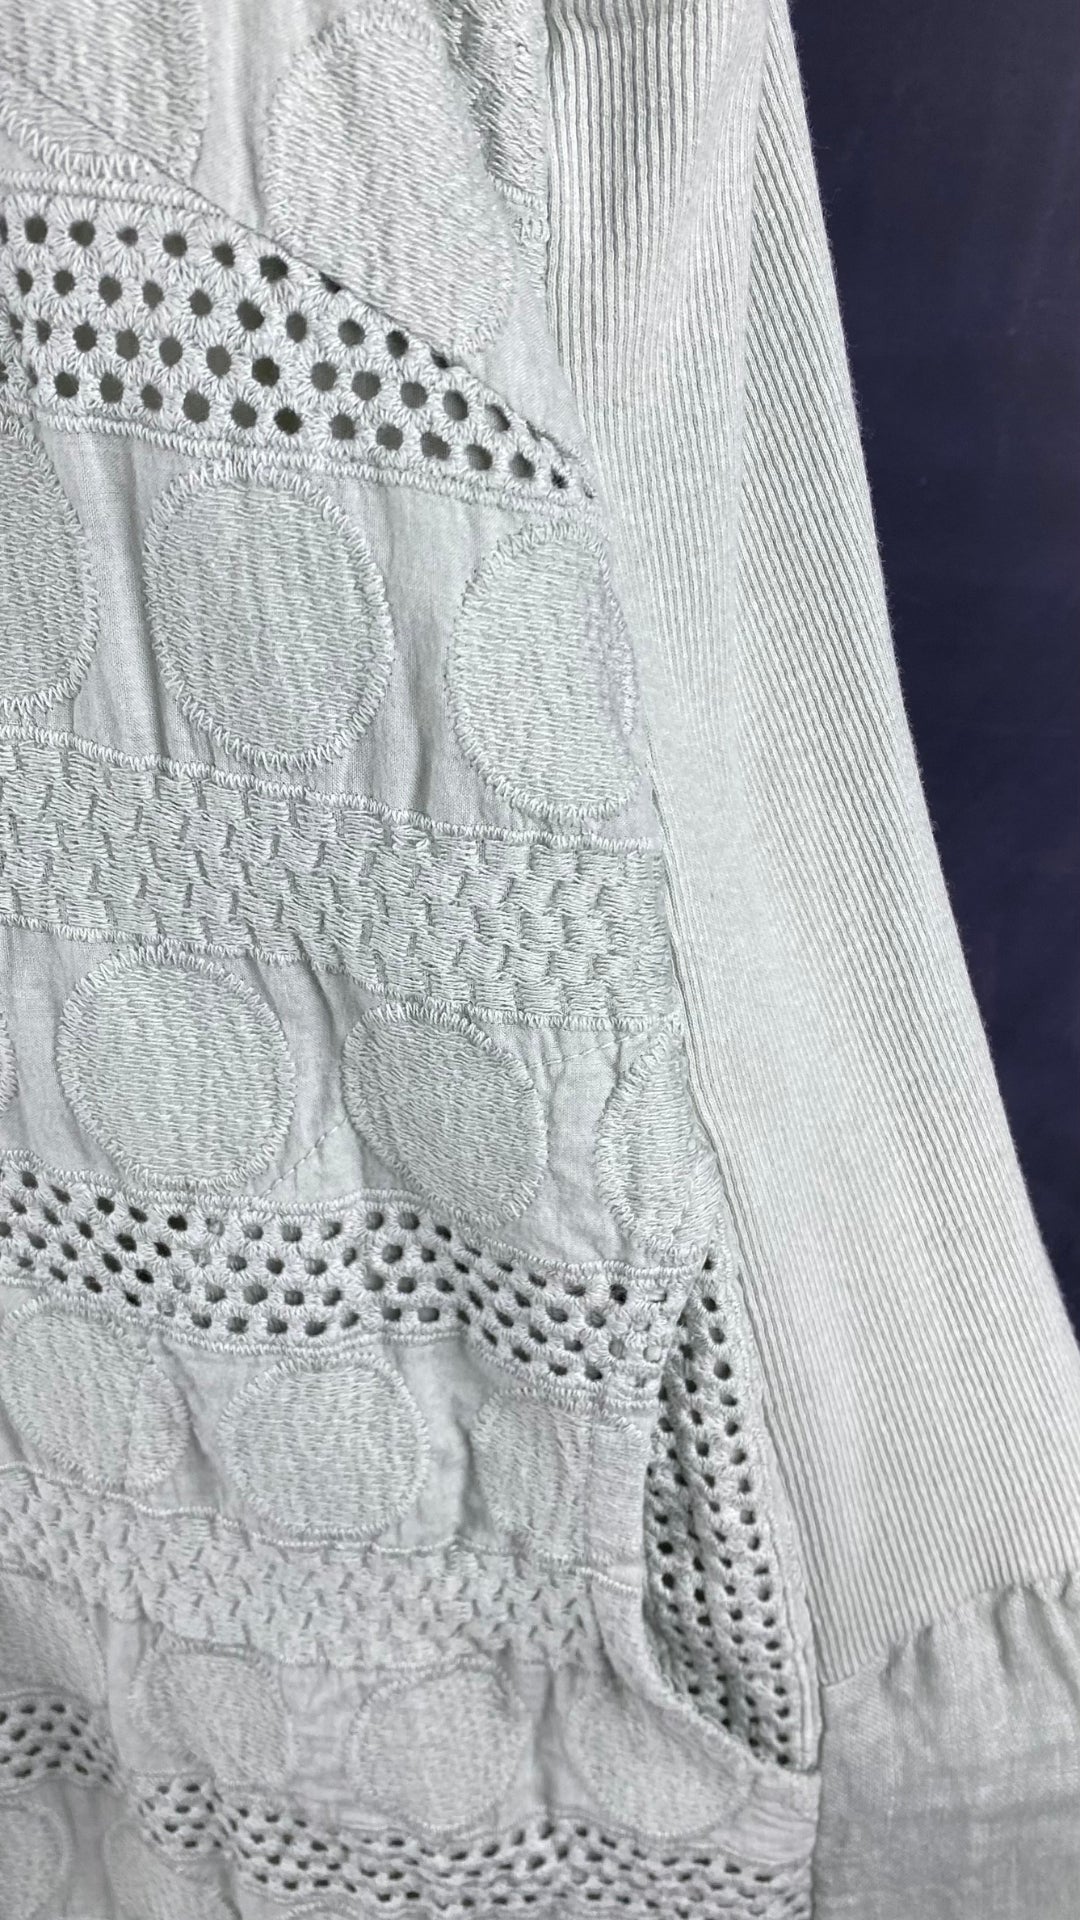 Robe sauge en lin brodé avec poches, taille 2X. Vue des tissus.